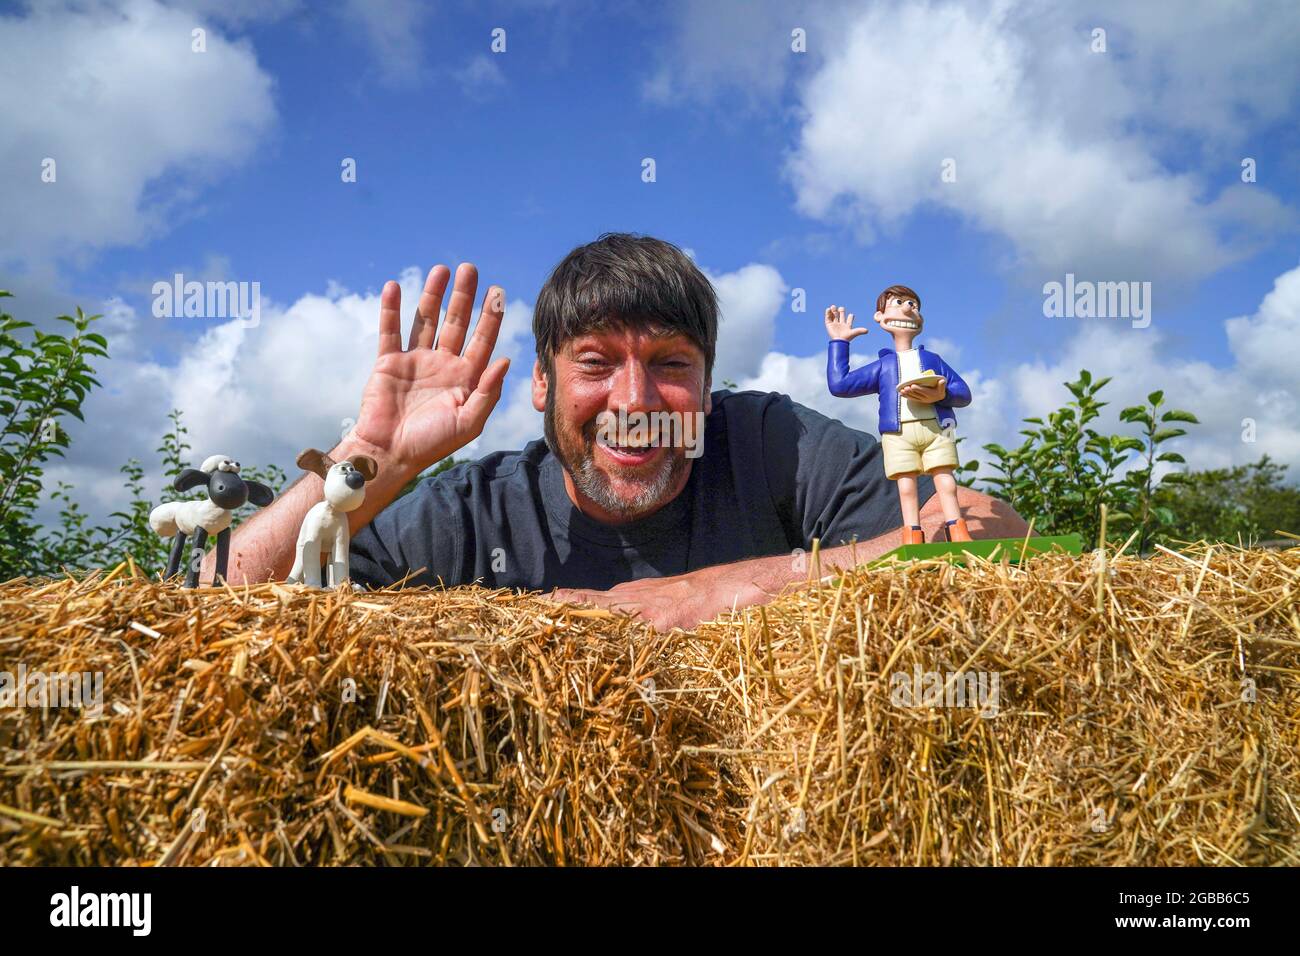 Der ehemalige Blur-Bassist Alex James trifft auf der Churchill Heath Farm  in Kingham, Chipping Norton, eine Modellversion von sich selbst. Bilddatum:  Dienstag, 3. August 2021 Stockfotografie - Alamy